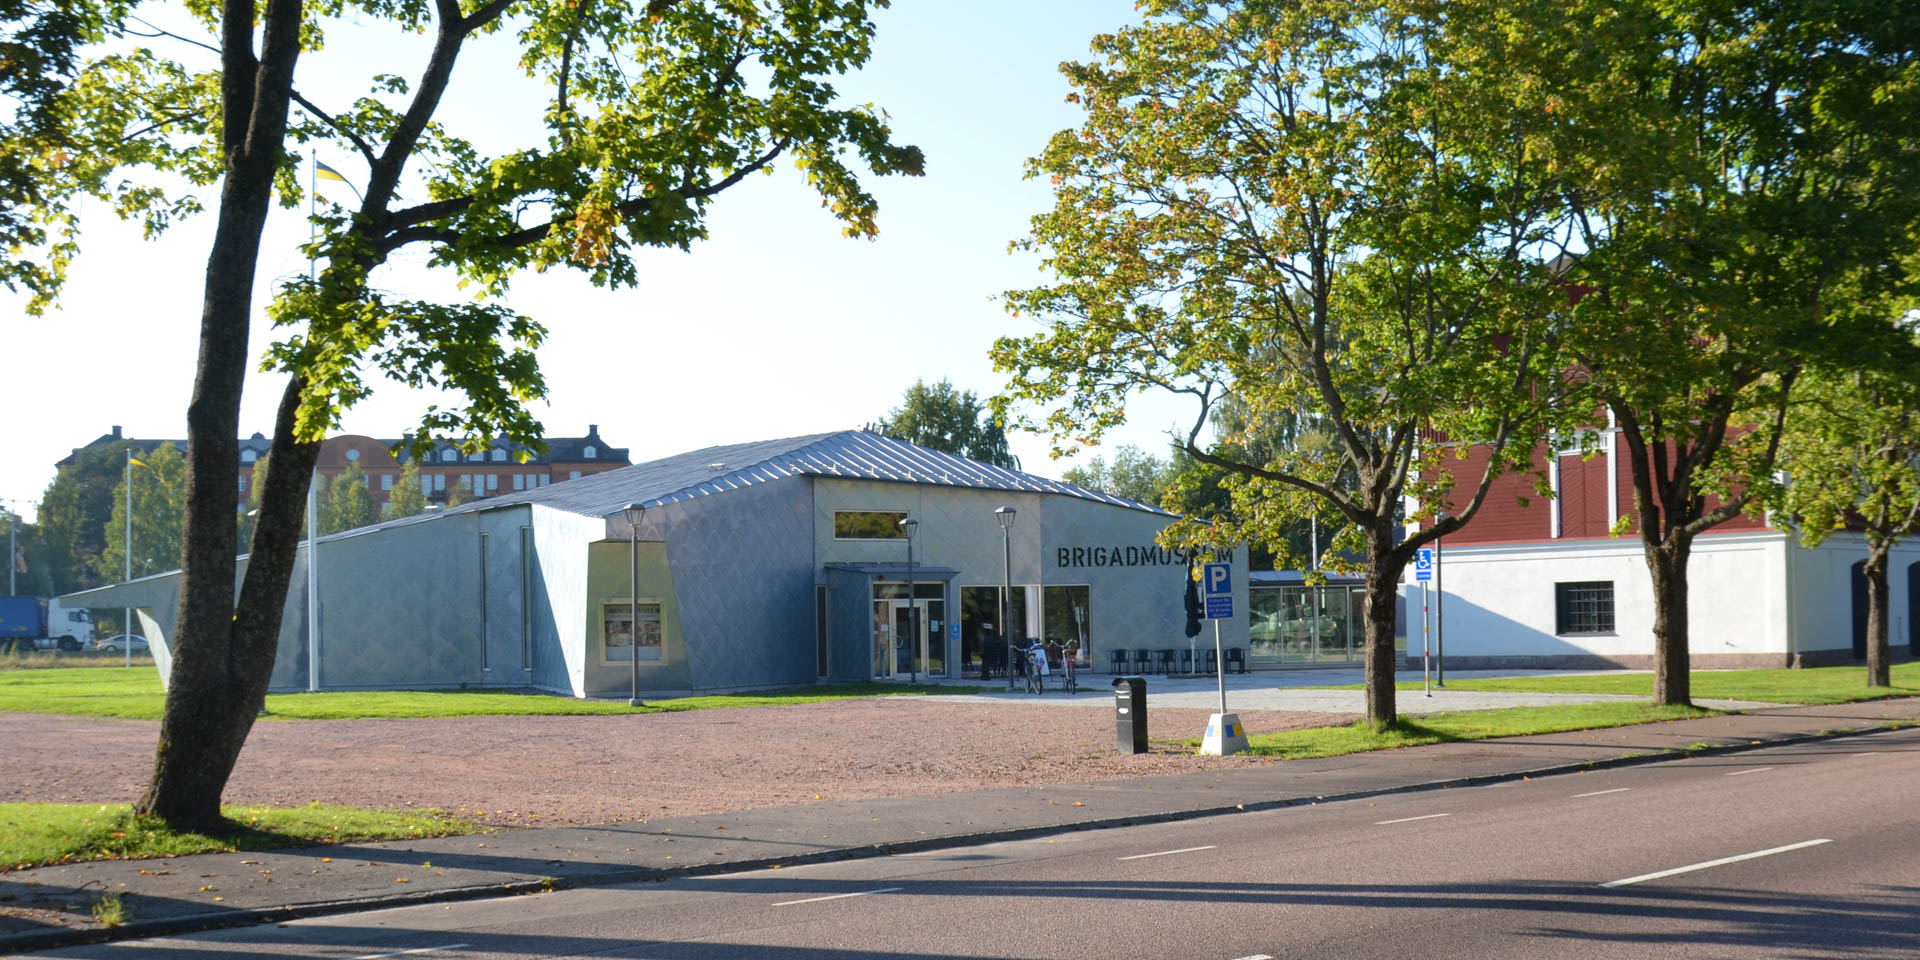 Brigadmuseum 2013